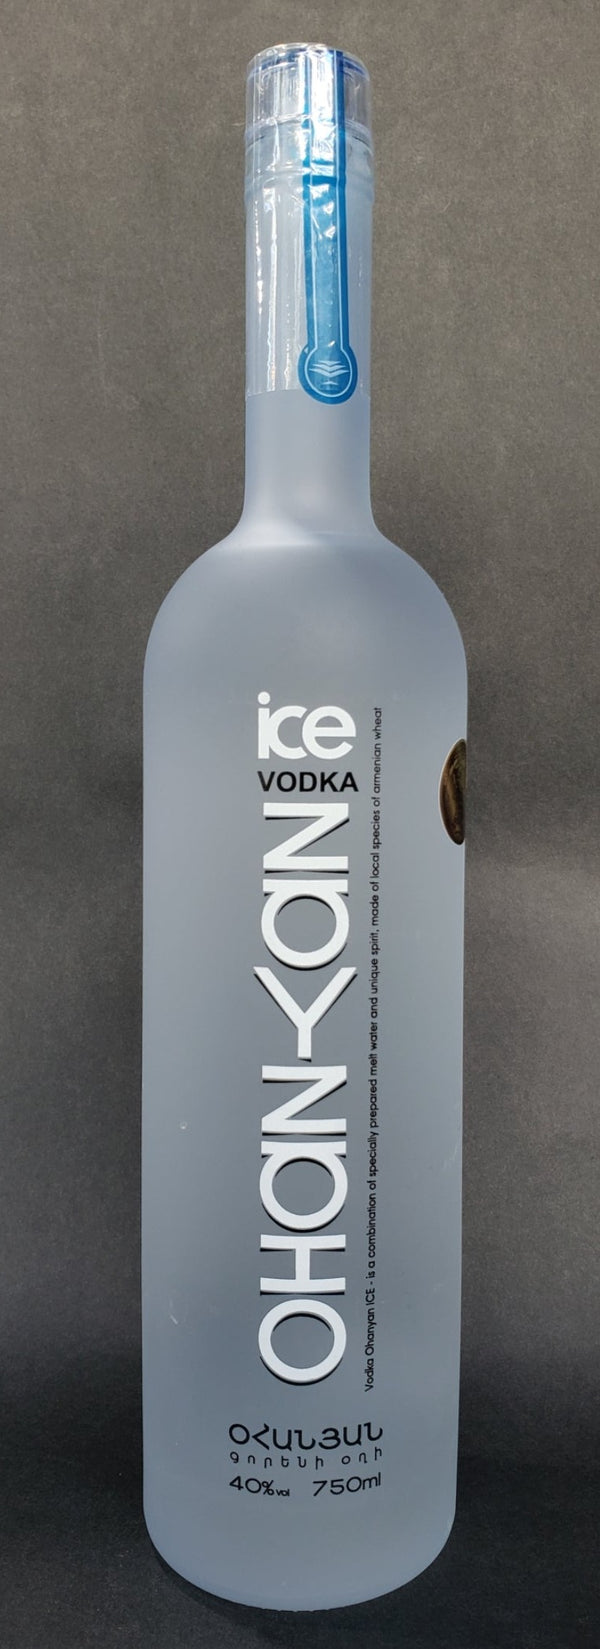 Ohanyan Vodka Ice